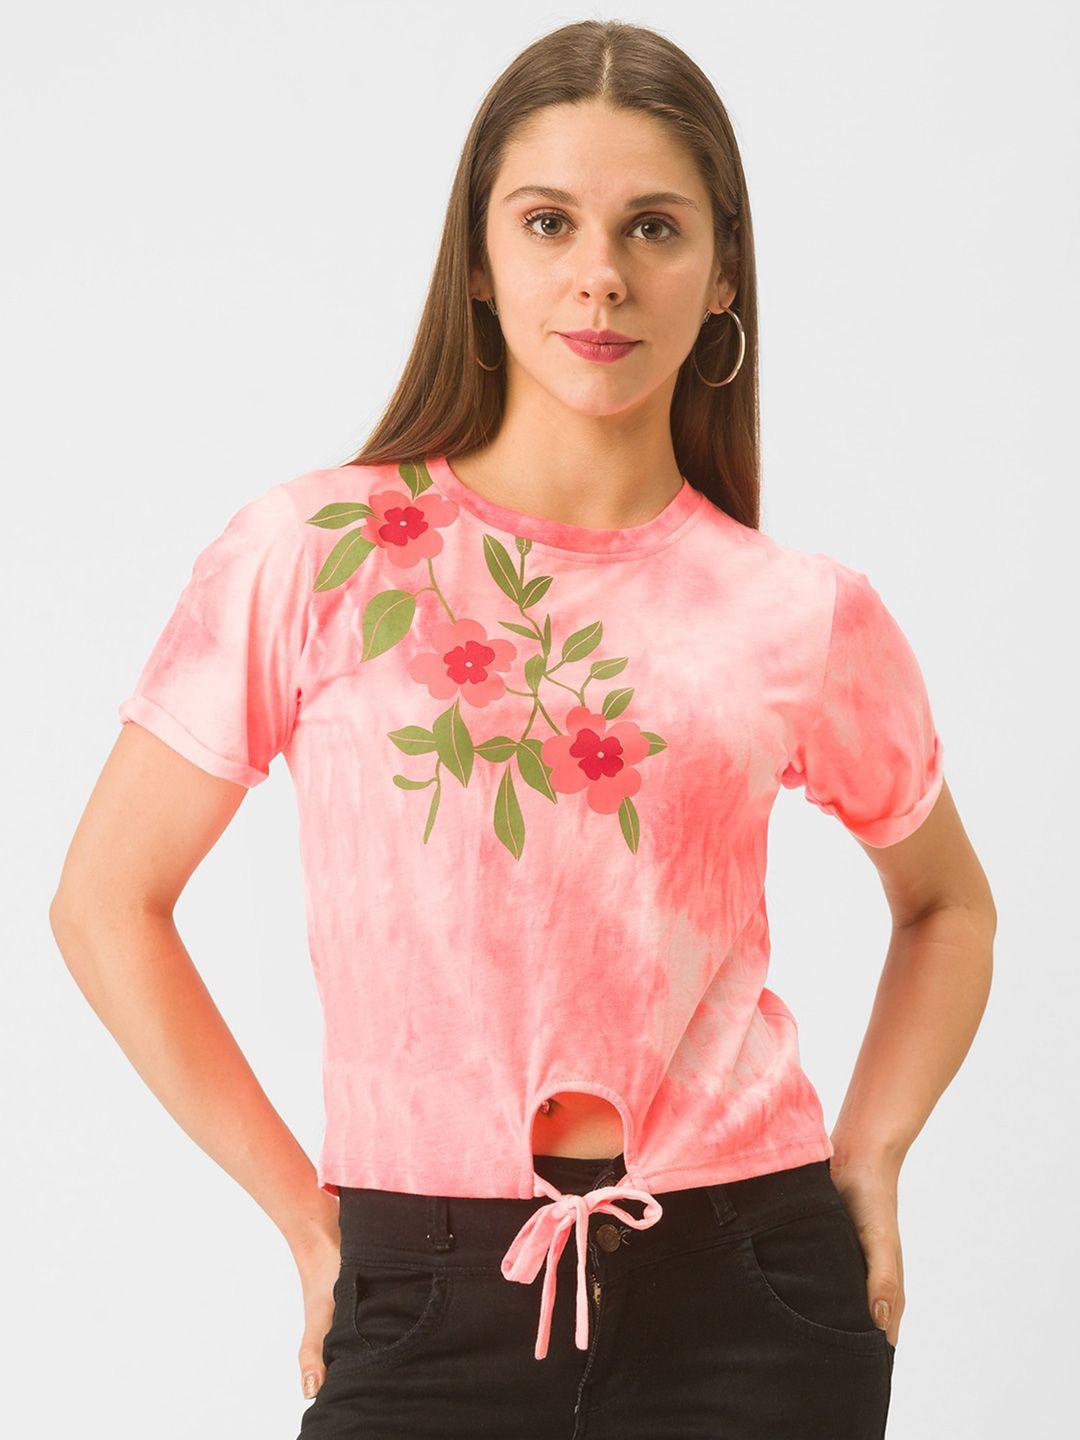 globus-women-pink-dyed-t-shirt